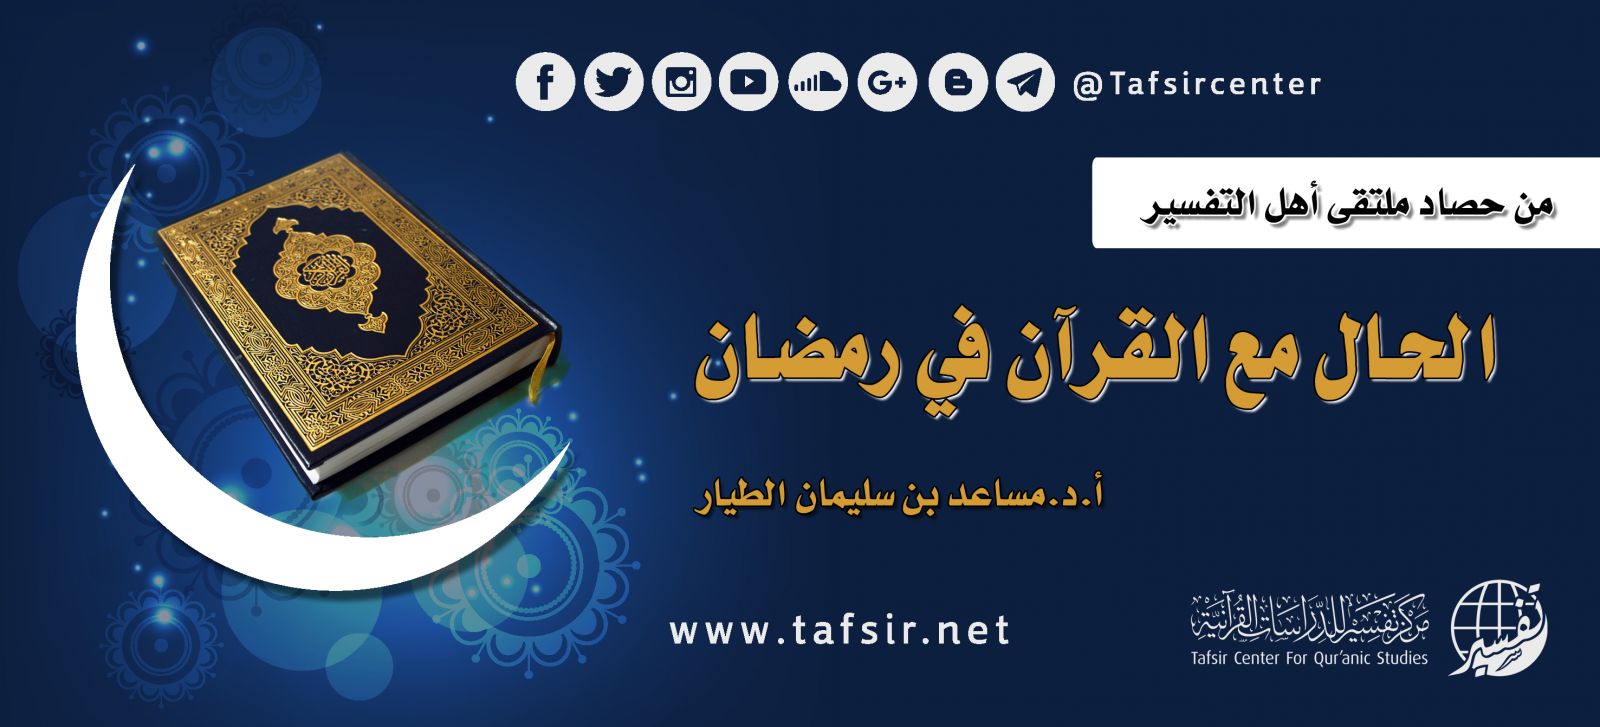 الحال مع القرآن في رمضان Tafsir Center For Quranic Studies مركز تفسير للدراسات القرآنية